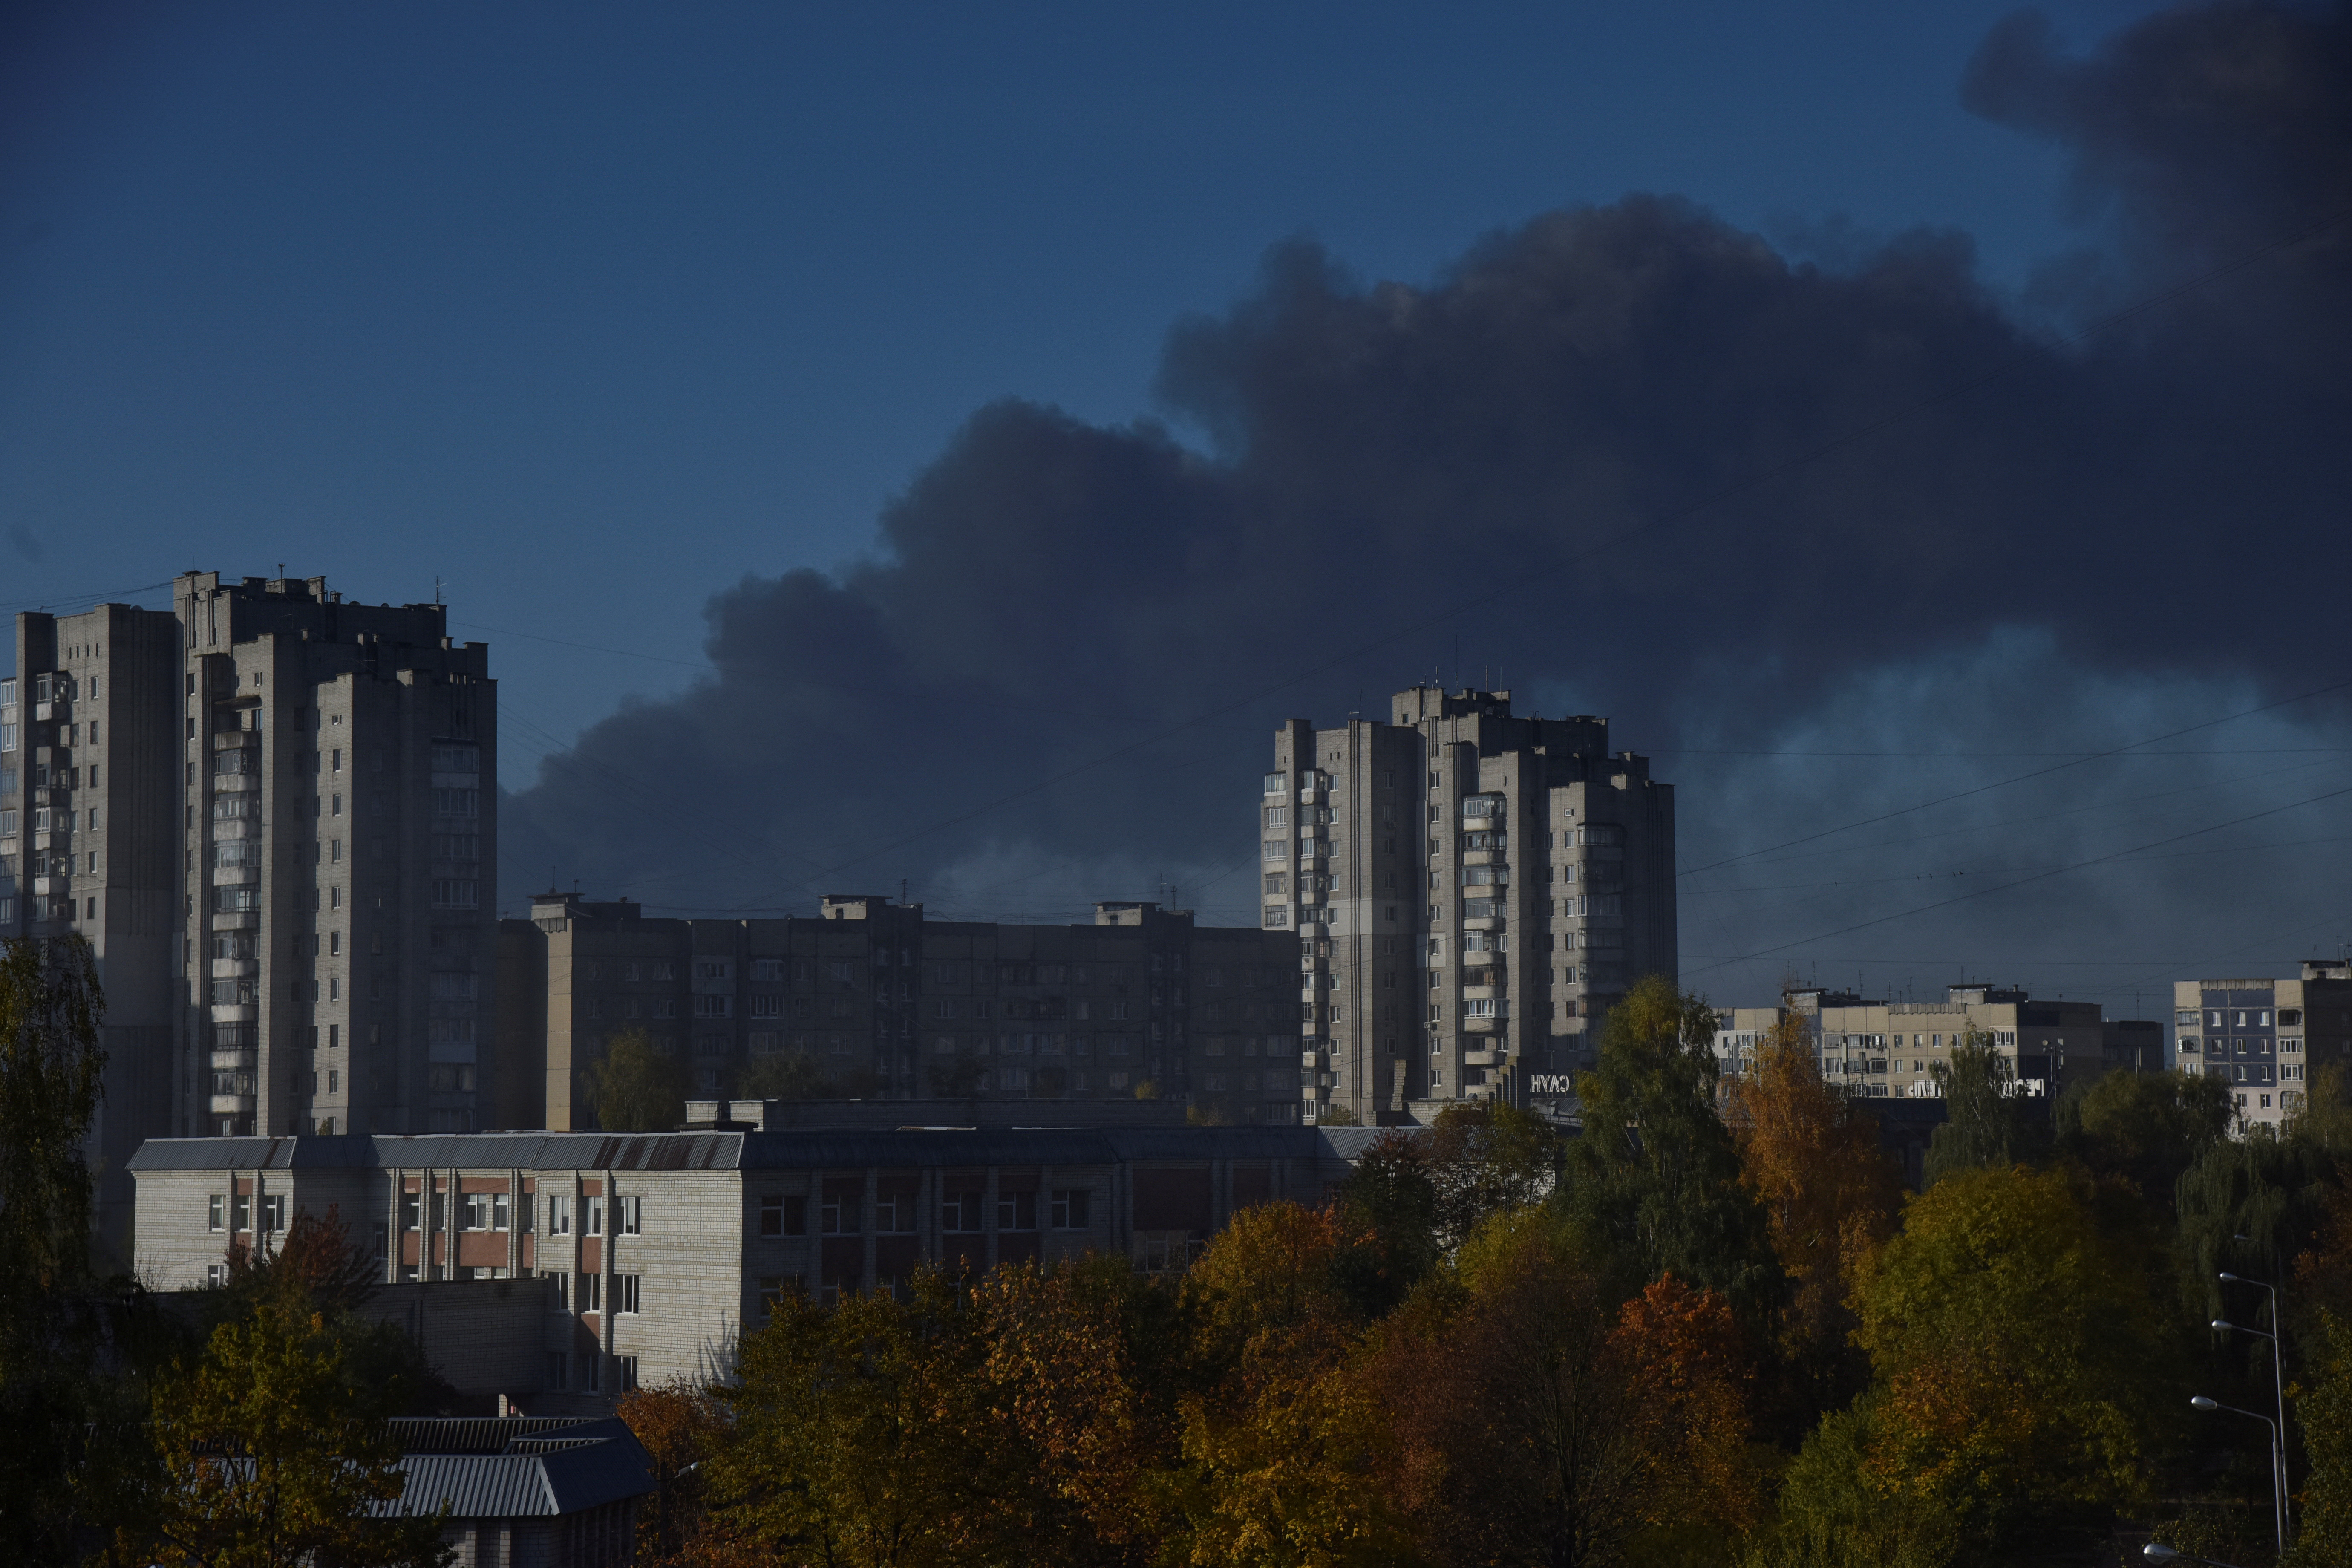 Columnas de humo se vieron en el cielo de Lviv, tras los ataques rusos de este lunes REUTERS/Pavlo Palamarchuk